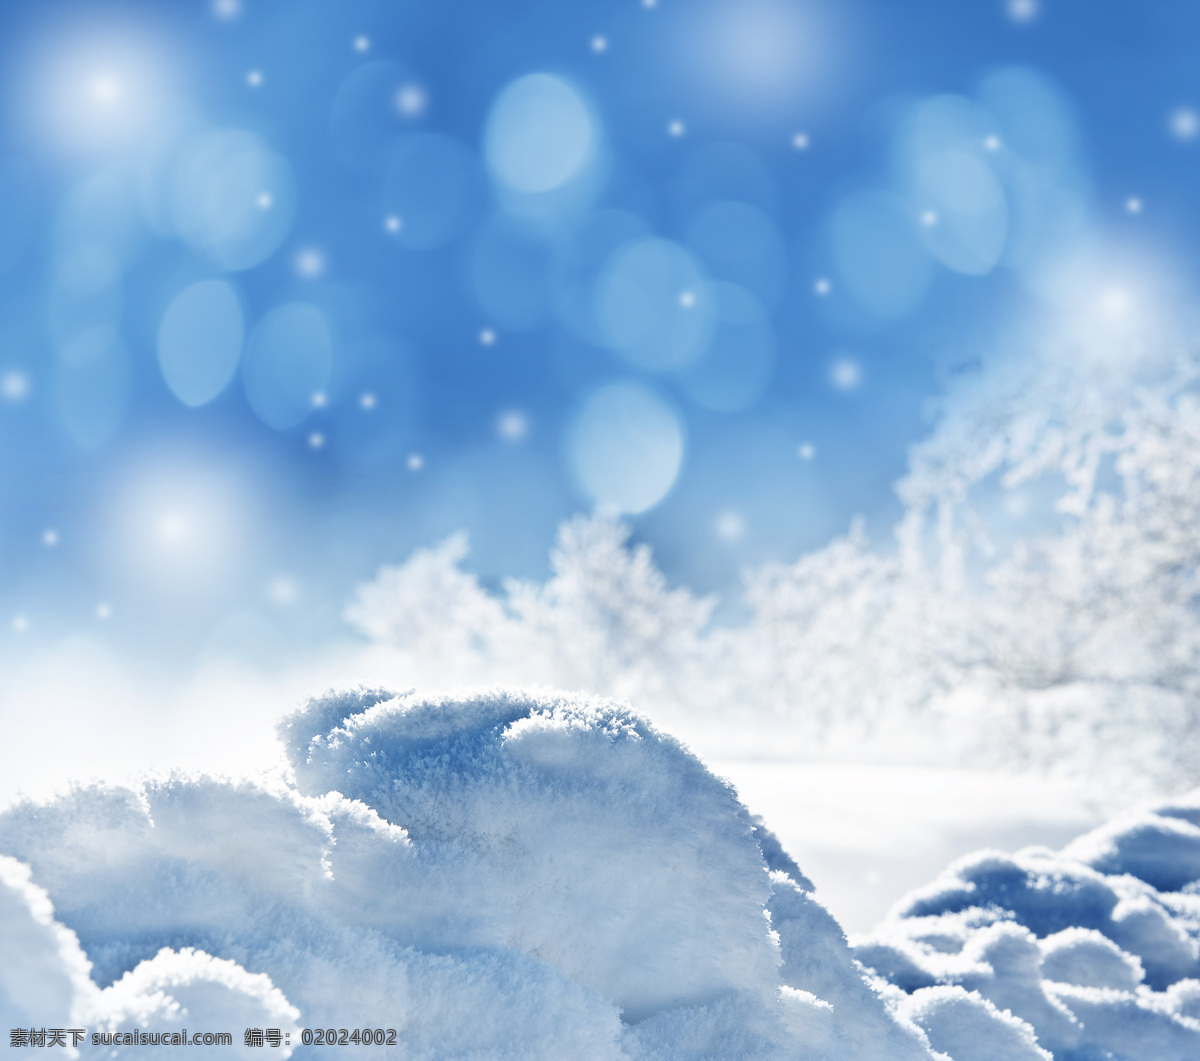 冬天雪地风景 冬天雪景 雪地 美丽雪景 梦幻背景 自然风景 冬天风景 自然景观 白色